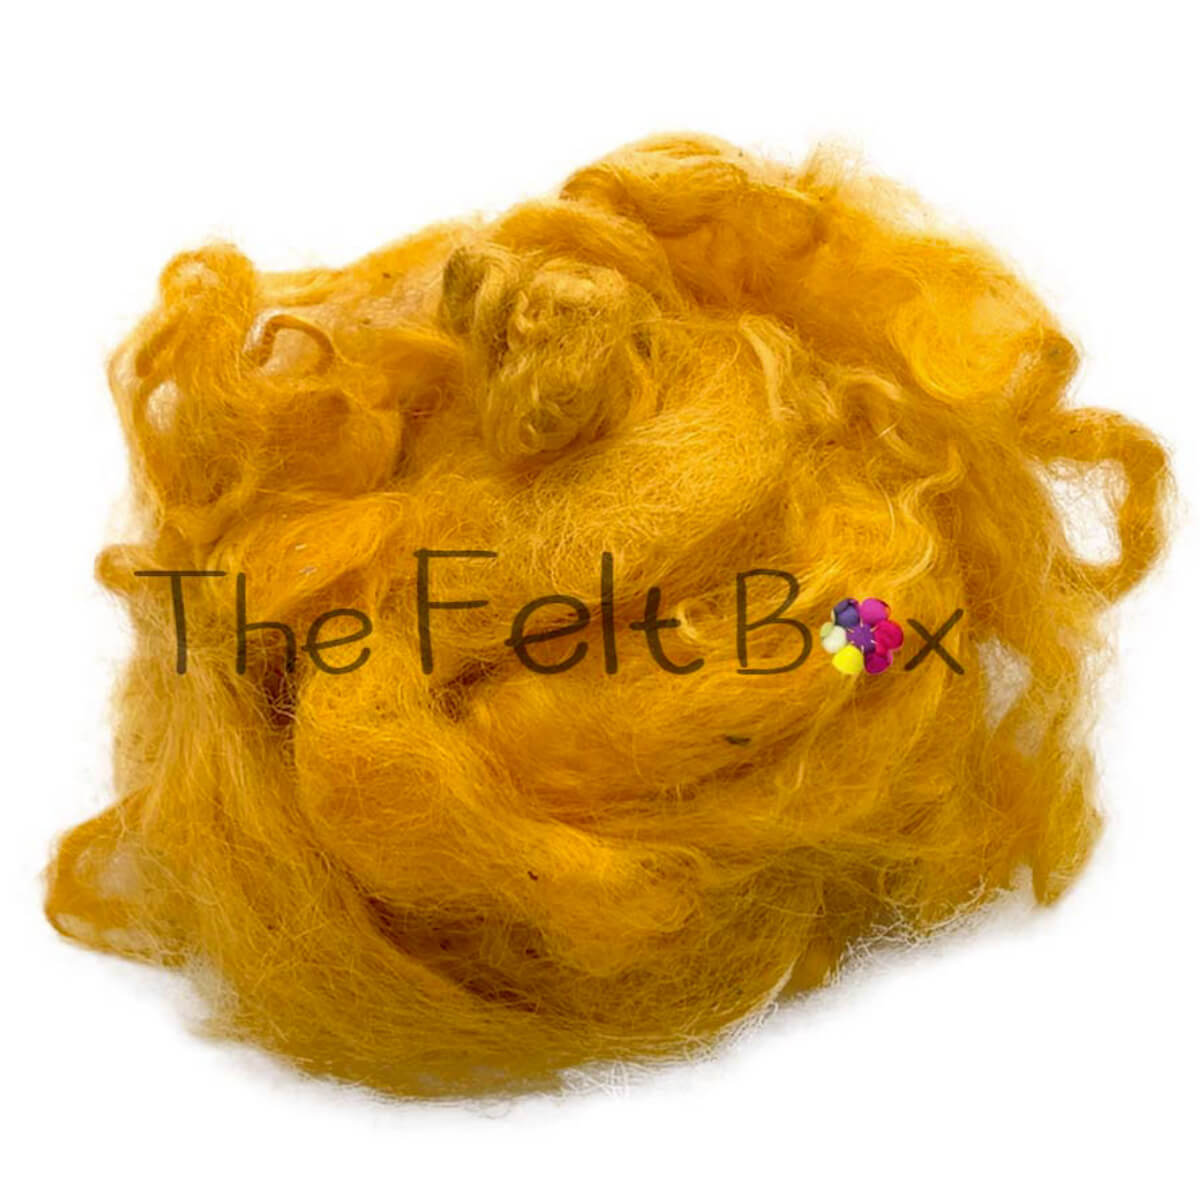 Fleece Wensleydale Sheep, Scoured, Yellow Wool Flakes 50g